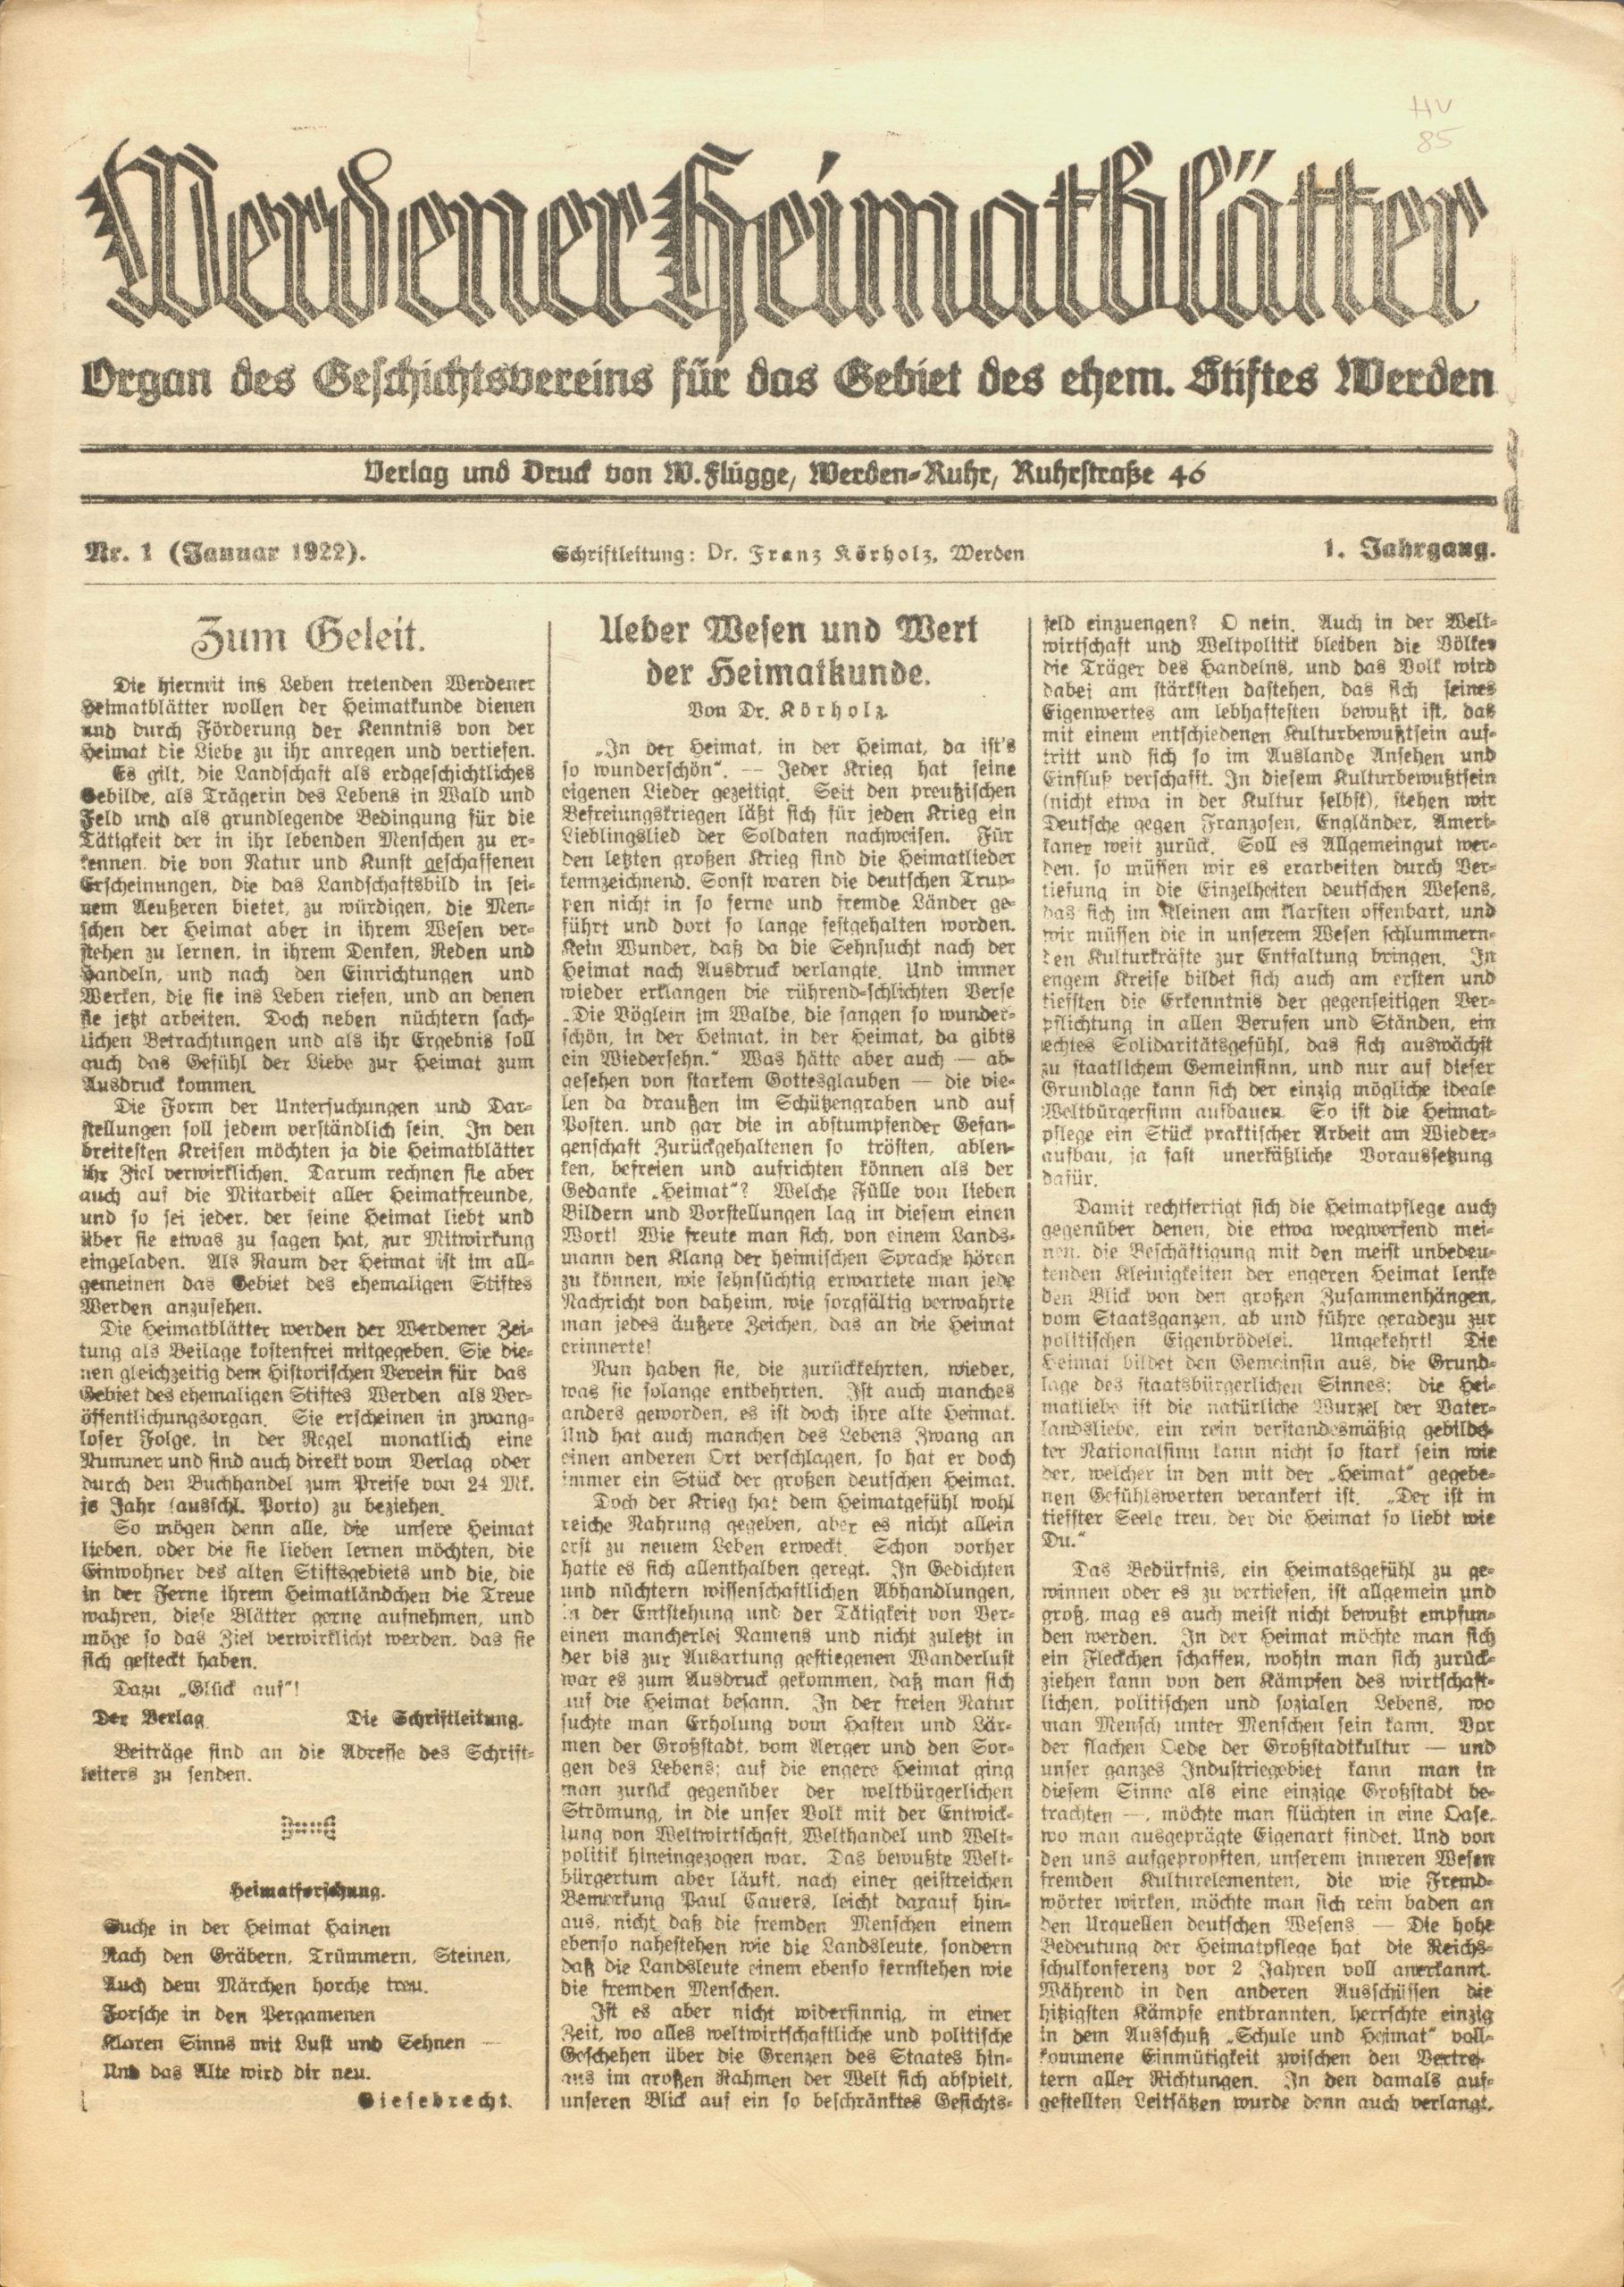 Werdener Heimatblätter herausgegeben von Dr. Franz Körholz (1922 bis 1927)